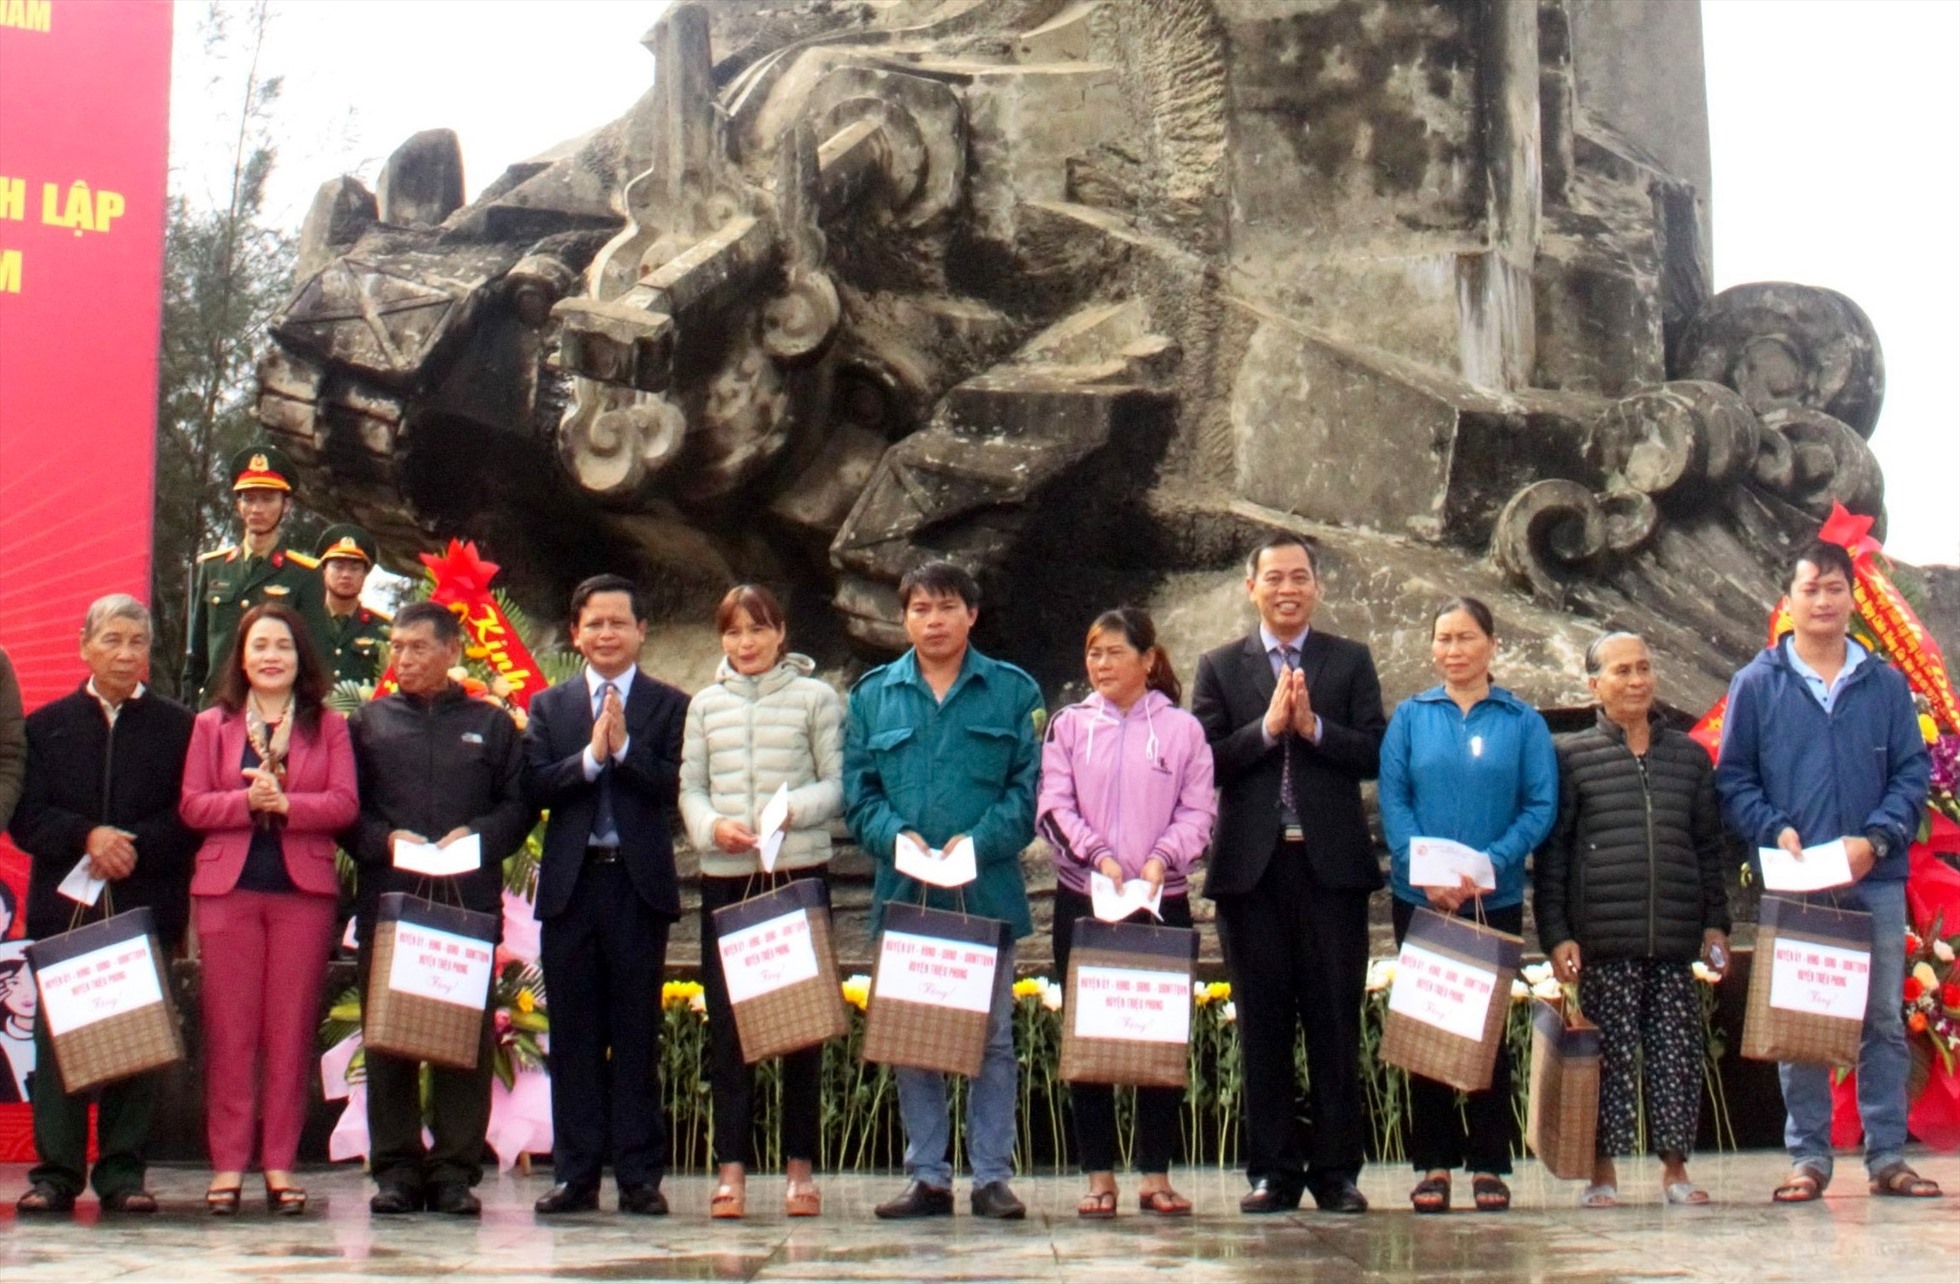 Các hộ dân có hoàn cảnh khó khăn được tặng quà tại lễ Kỷ niệm 50 năm ngày chiến thắng Cửa Việt. Ảnh: HT.